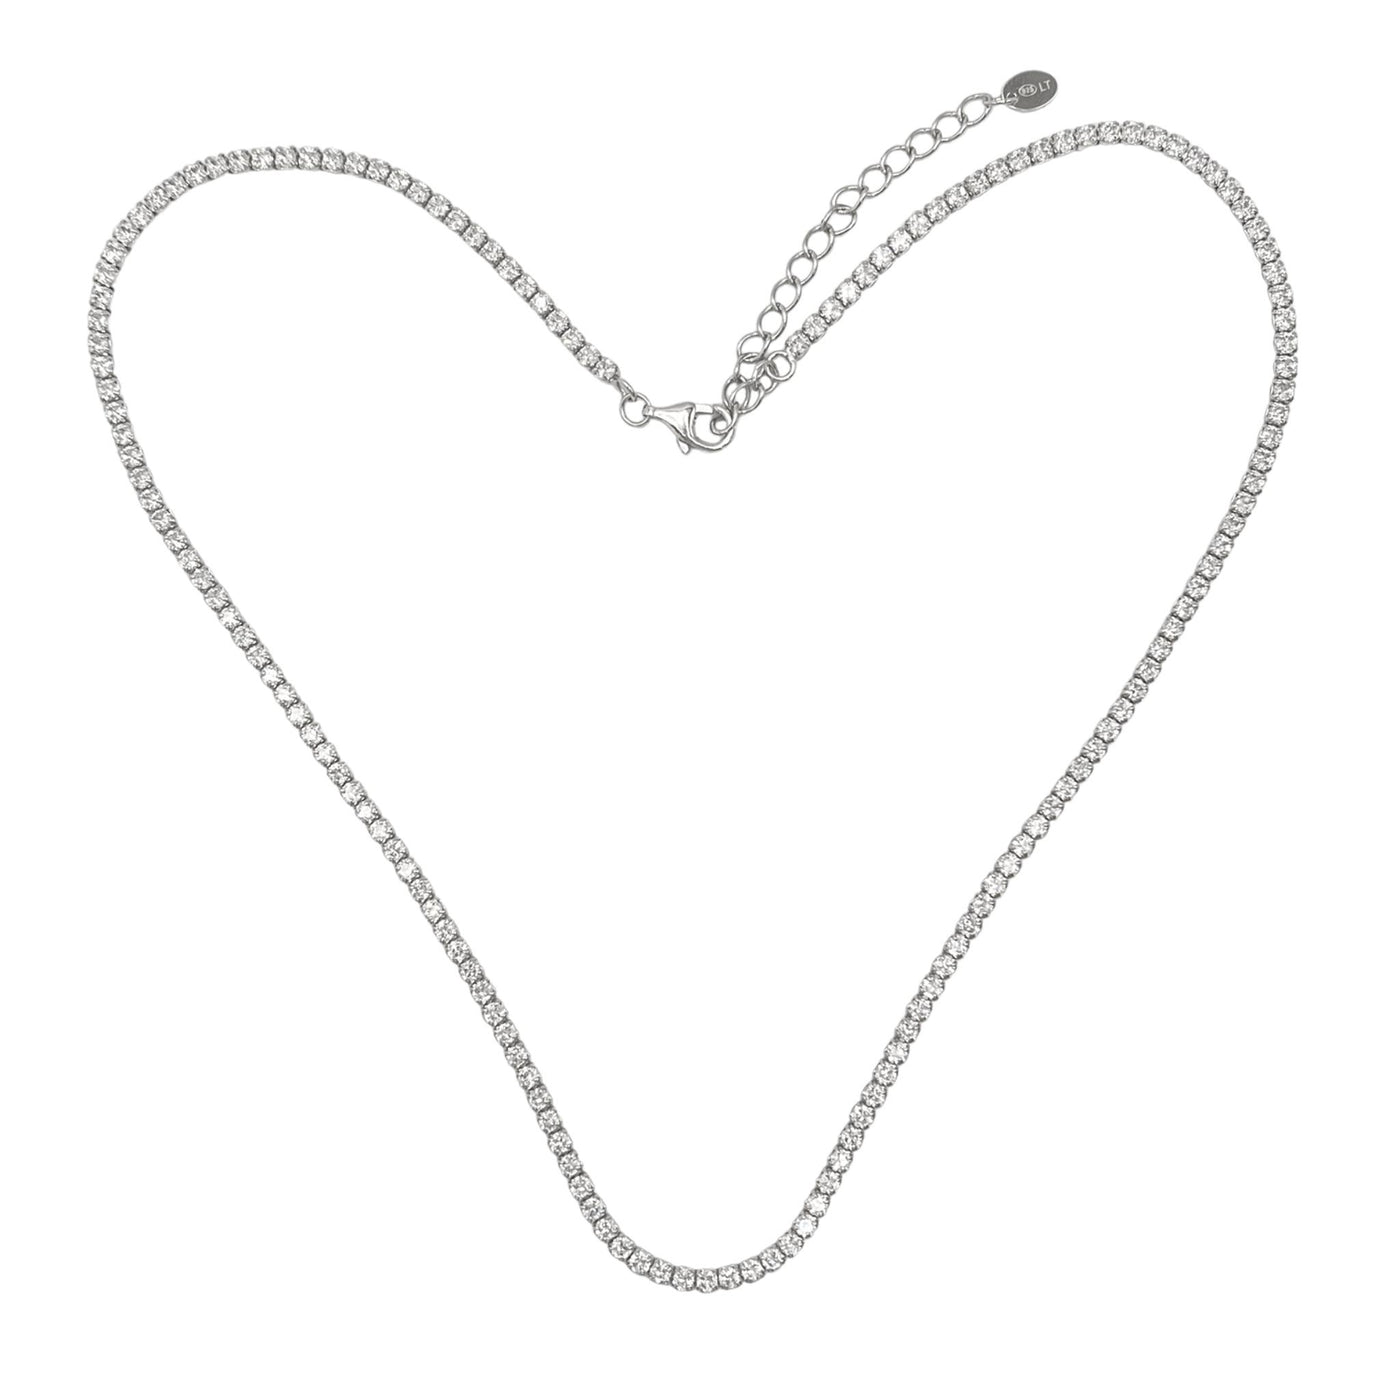 Silver machine tennis necklace - 2 mm